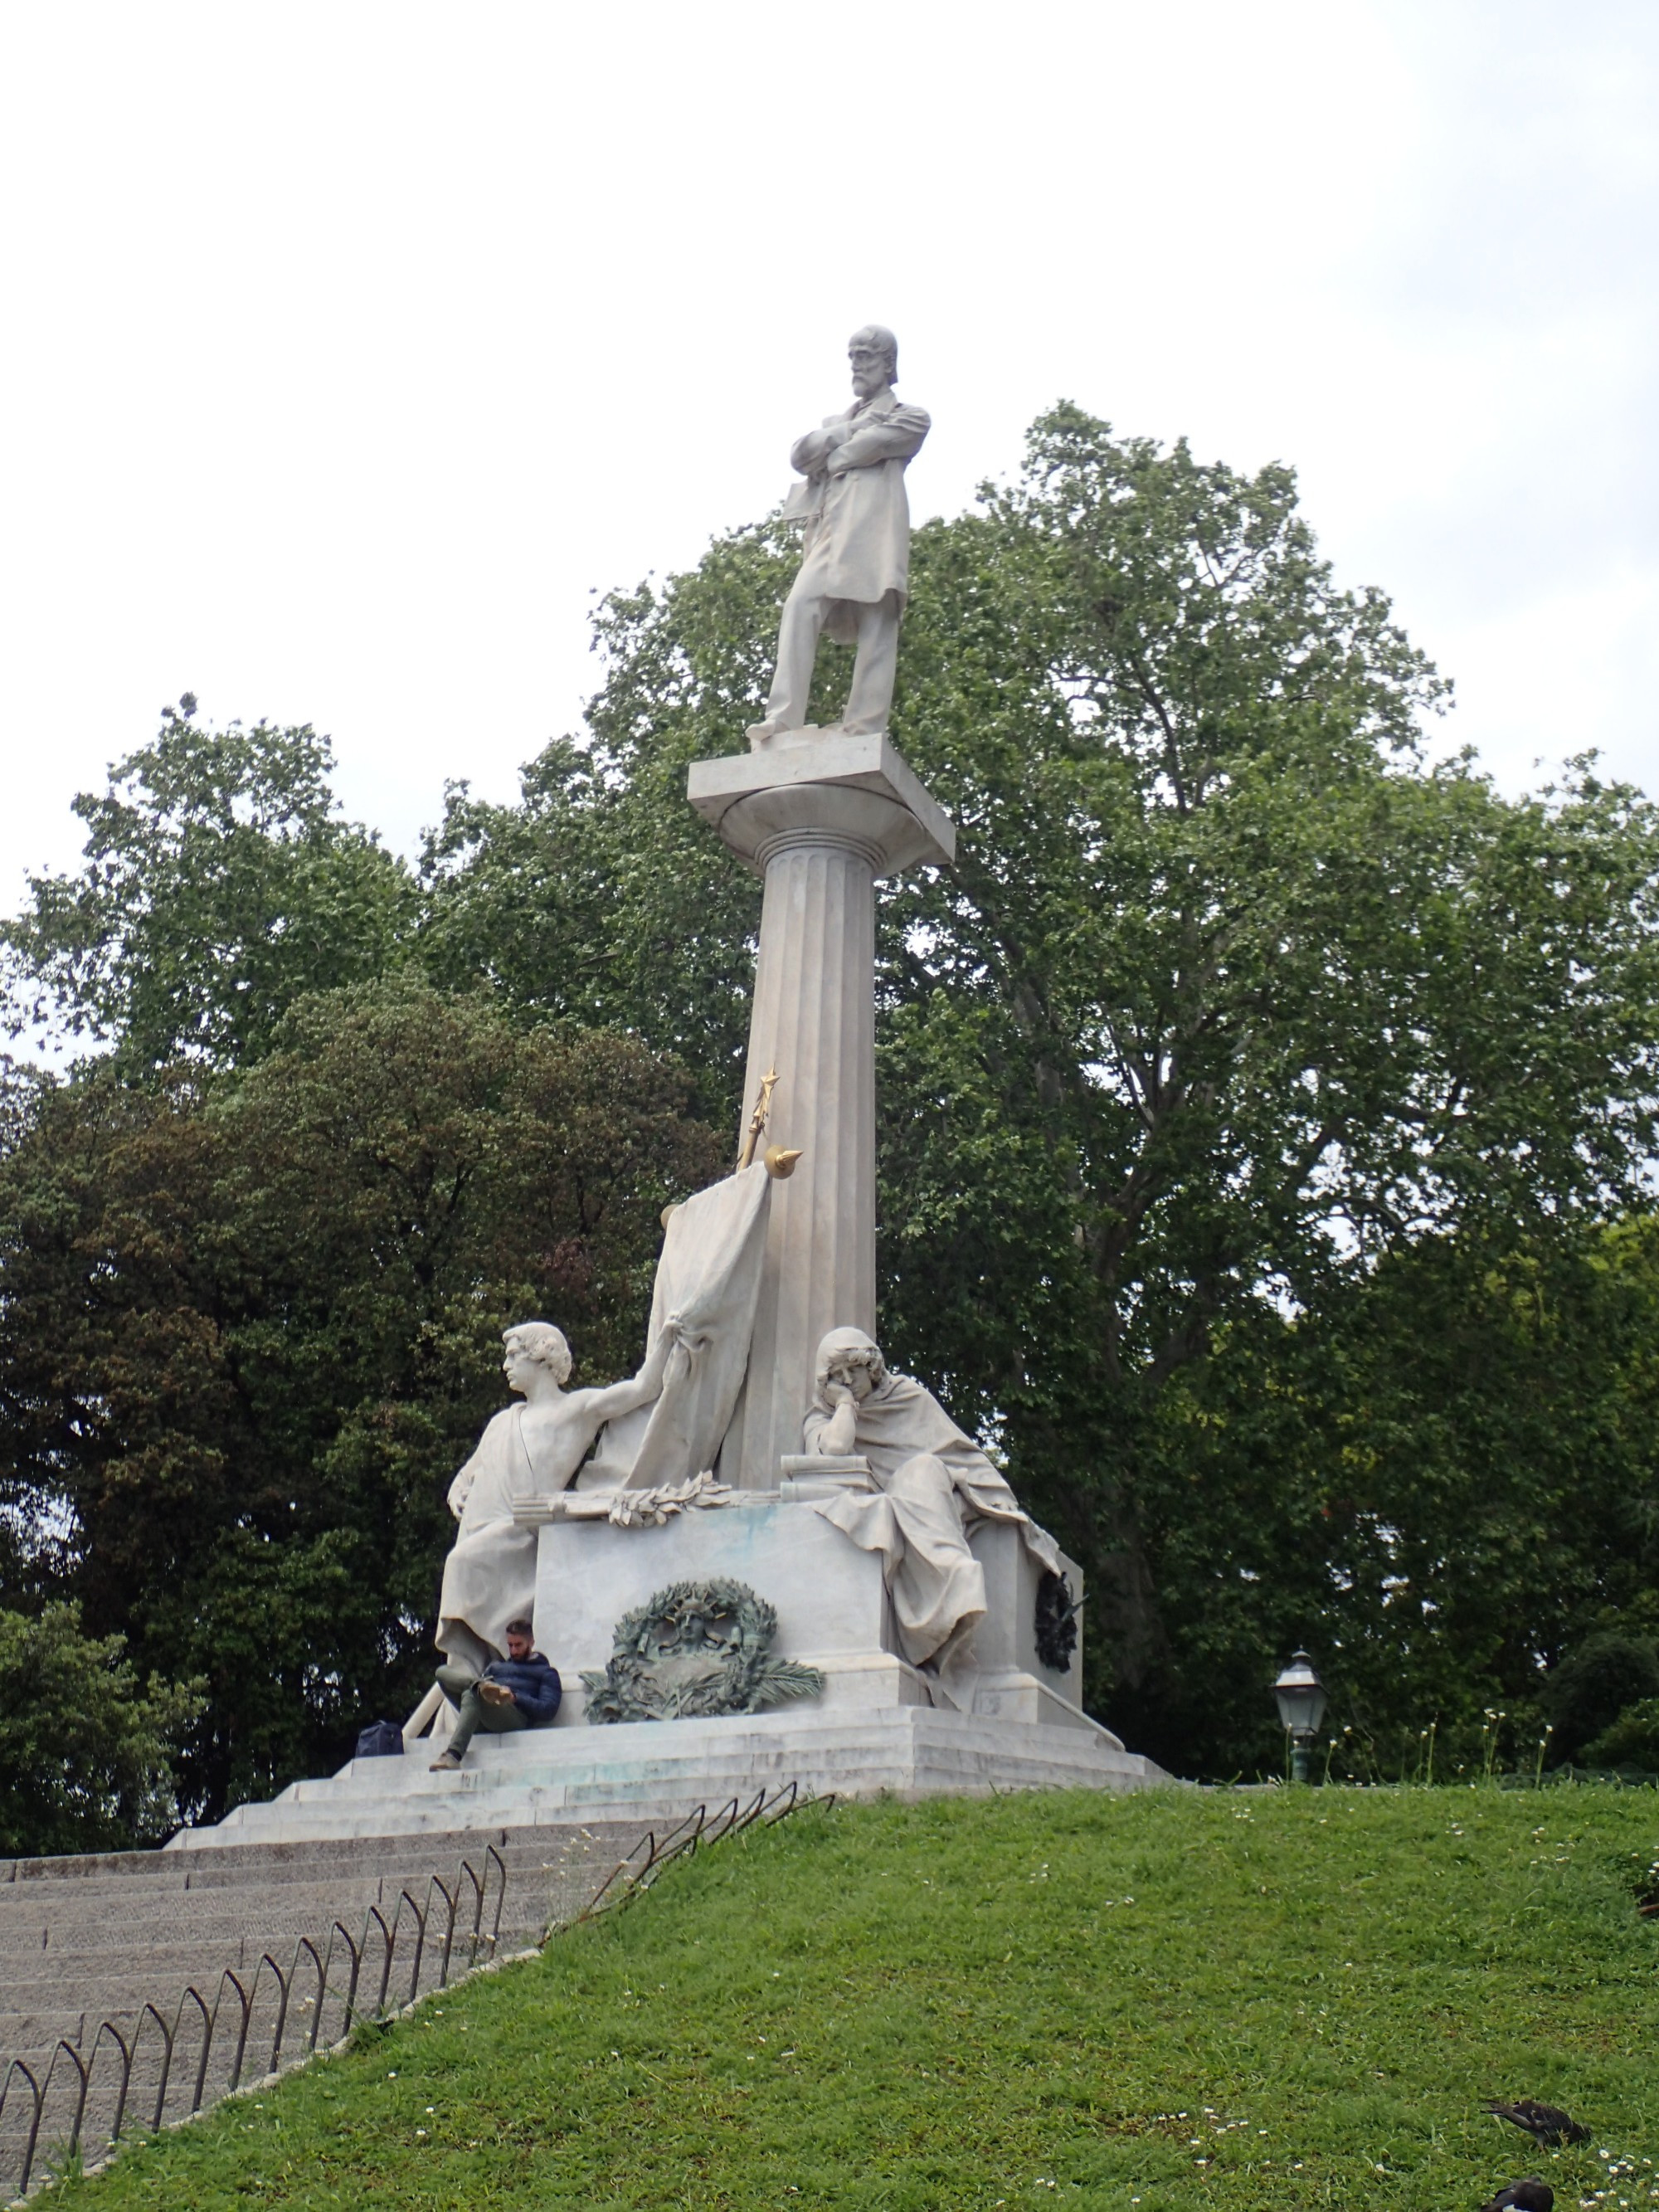 Monumento a Giuseppe Mazzini, Italy